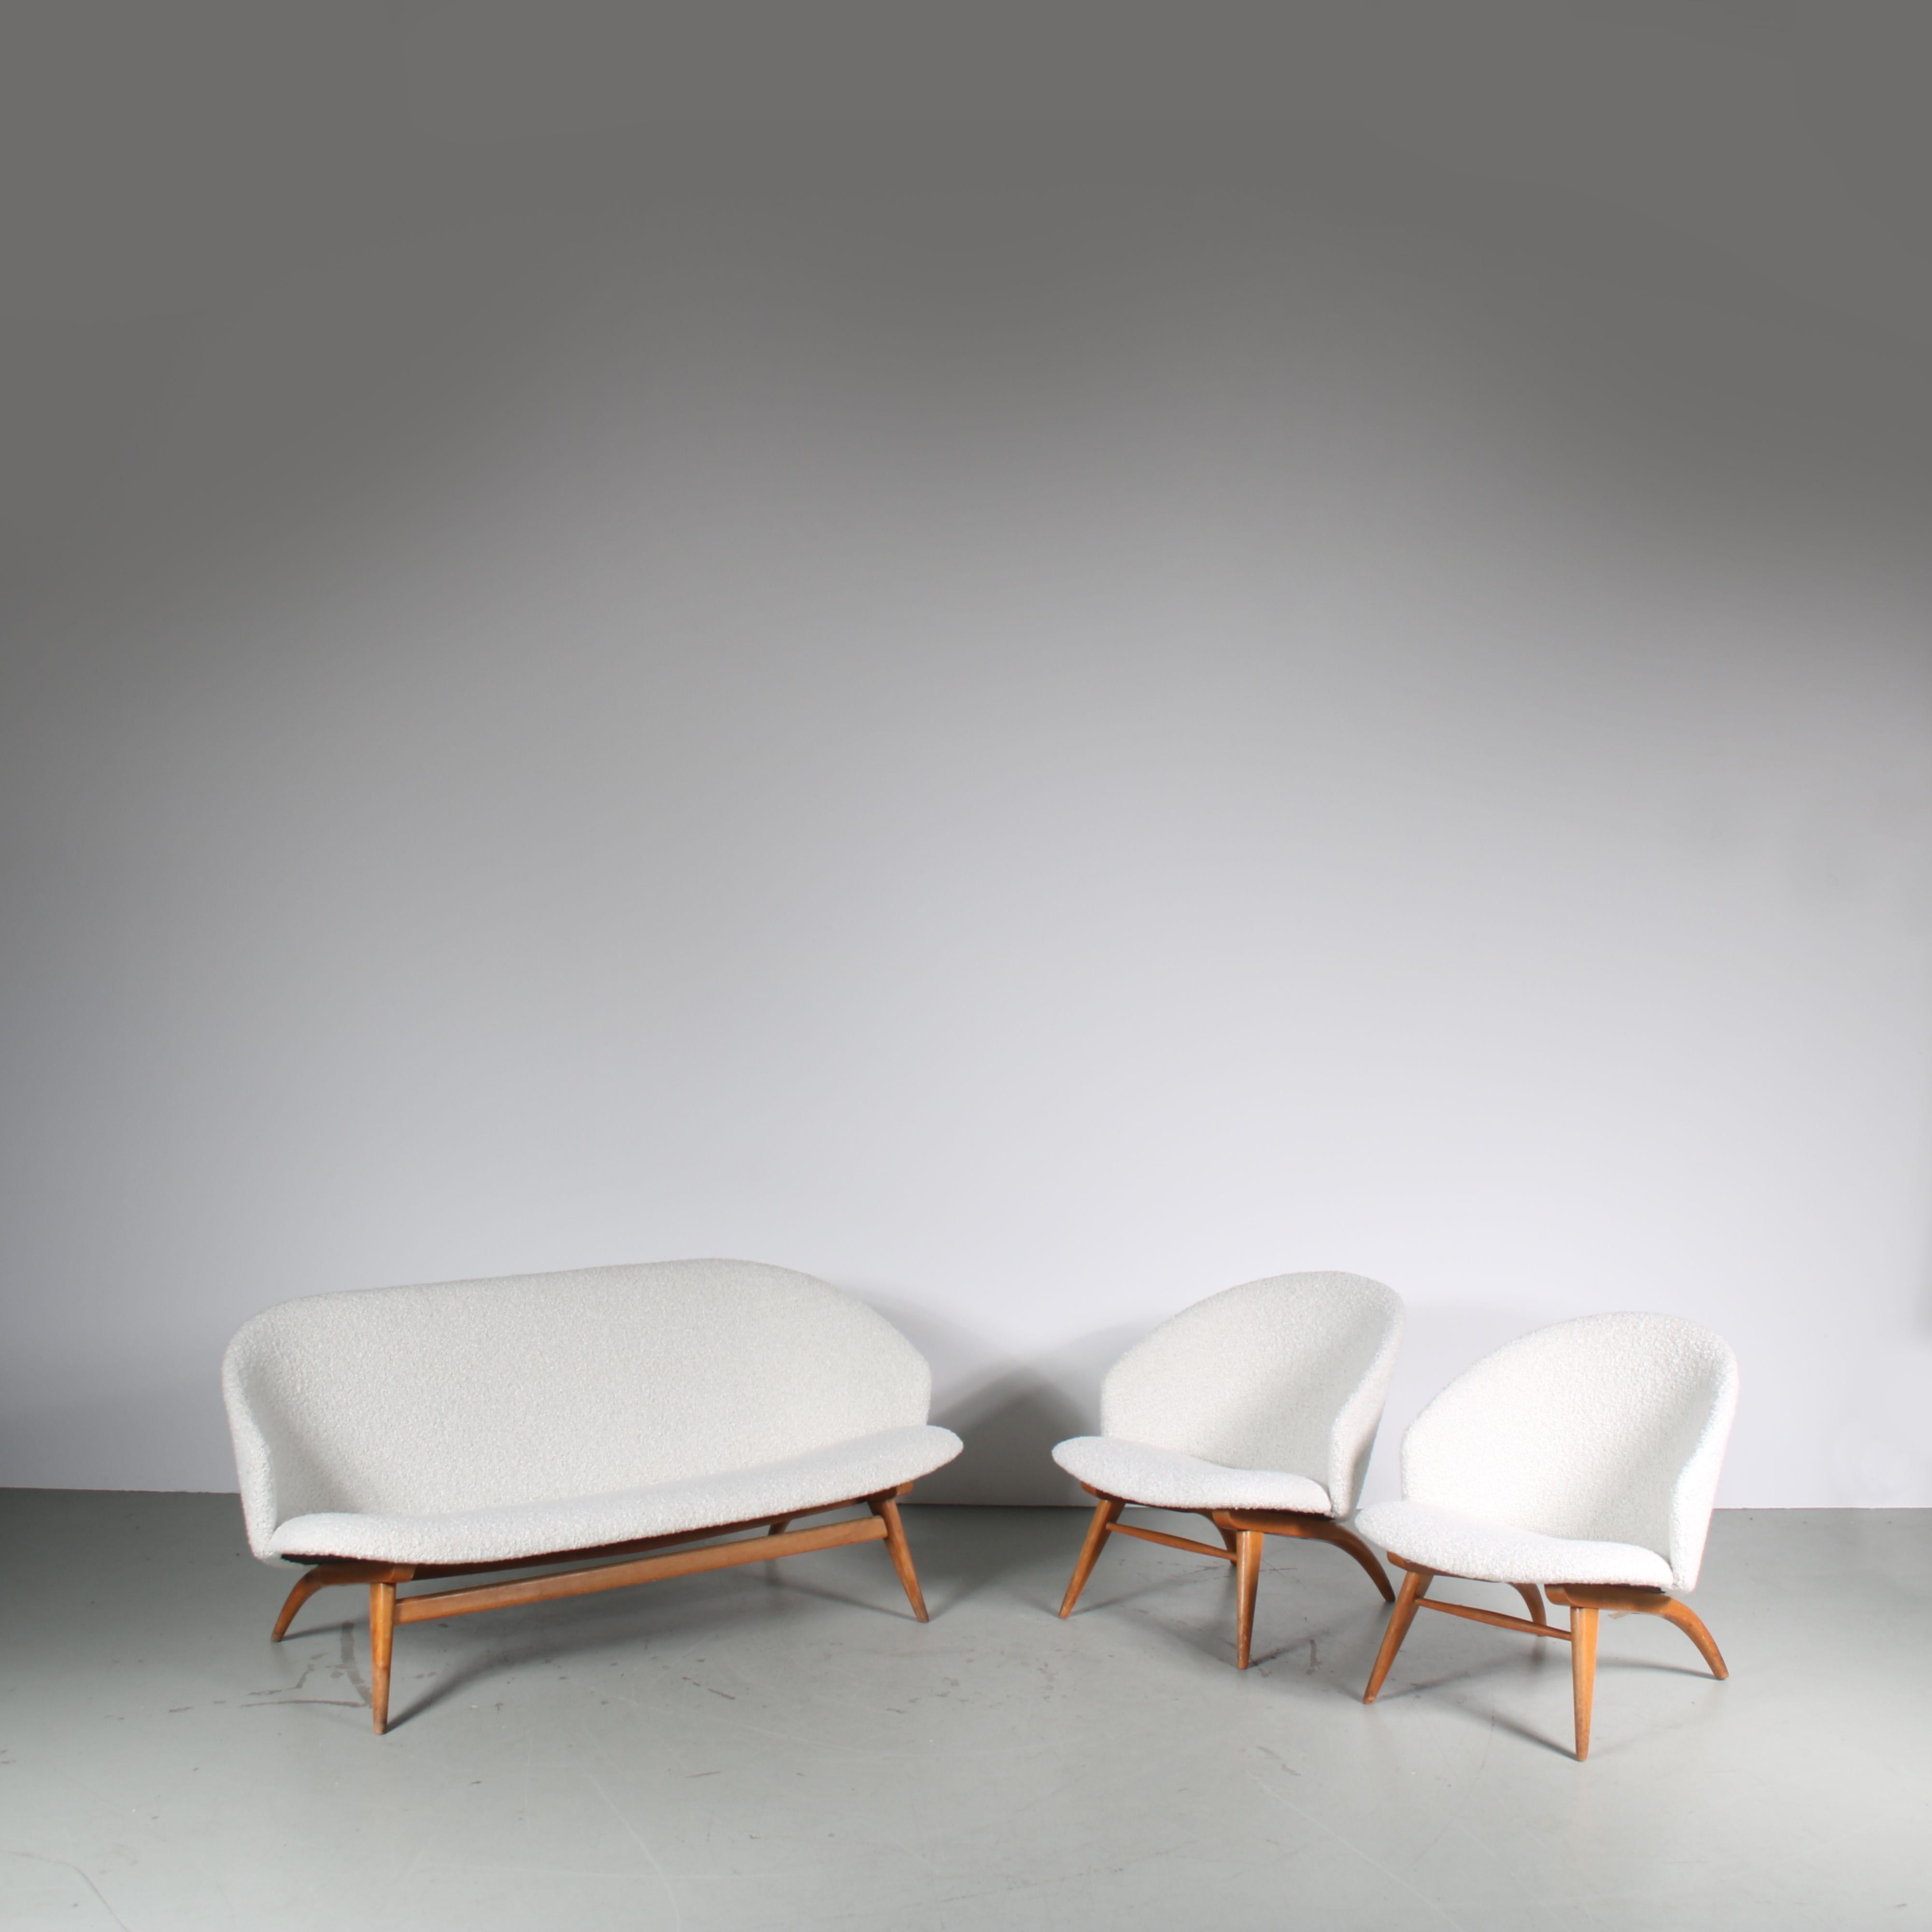 Un ensemble attrayant composé d'un canapé 3 places et de 2 fauteuils, conçu par Theo Ruth et fabriqué par Artifort aux Pays-Bas vers 1950.

Ces pièces élégantes sont dotées de cadres en bois de bouleau de belle qualité, légèrement incurvés, avec une